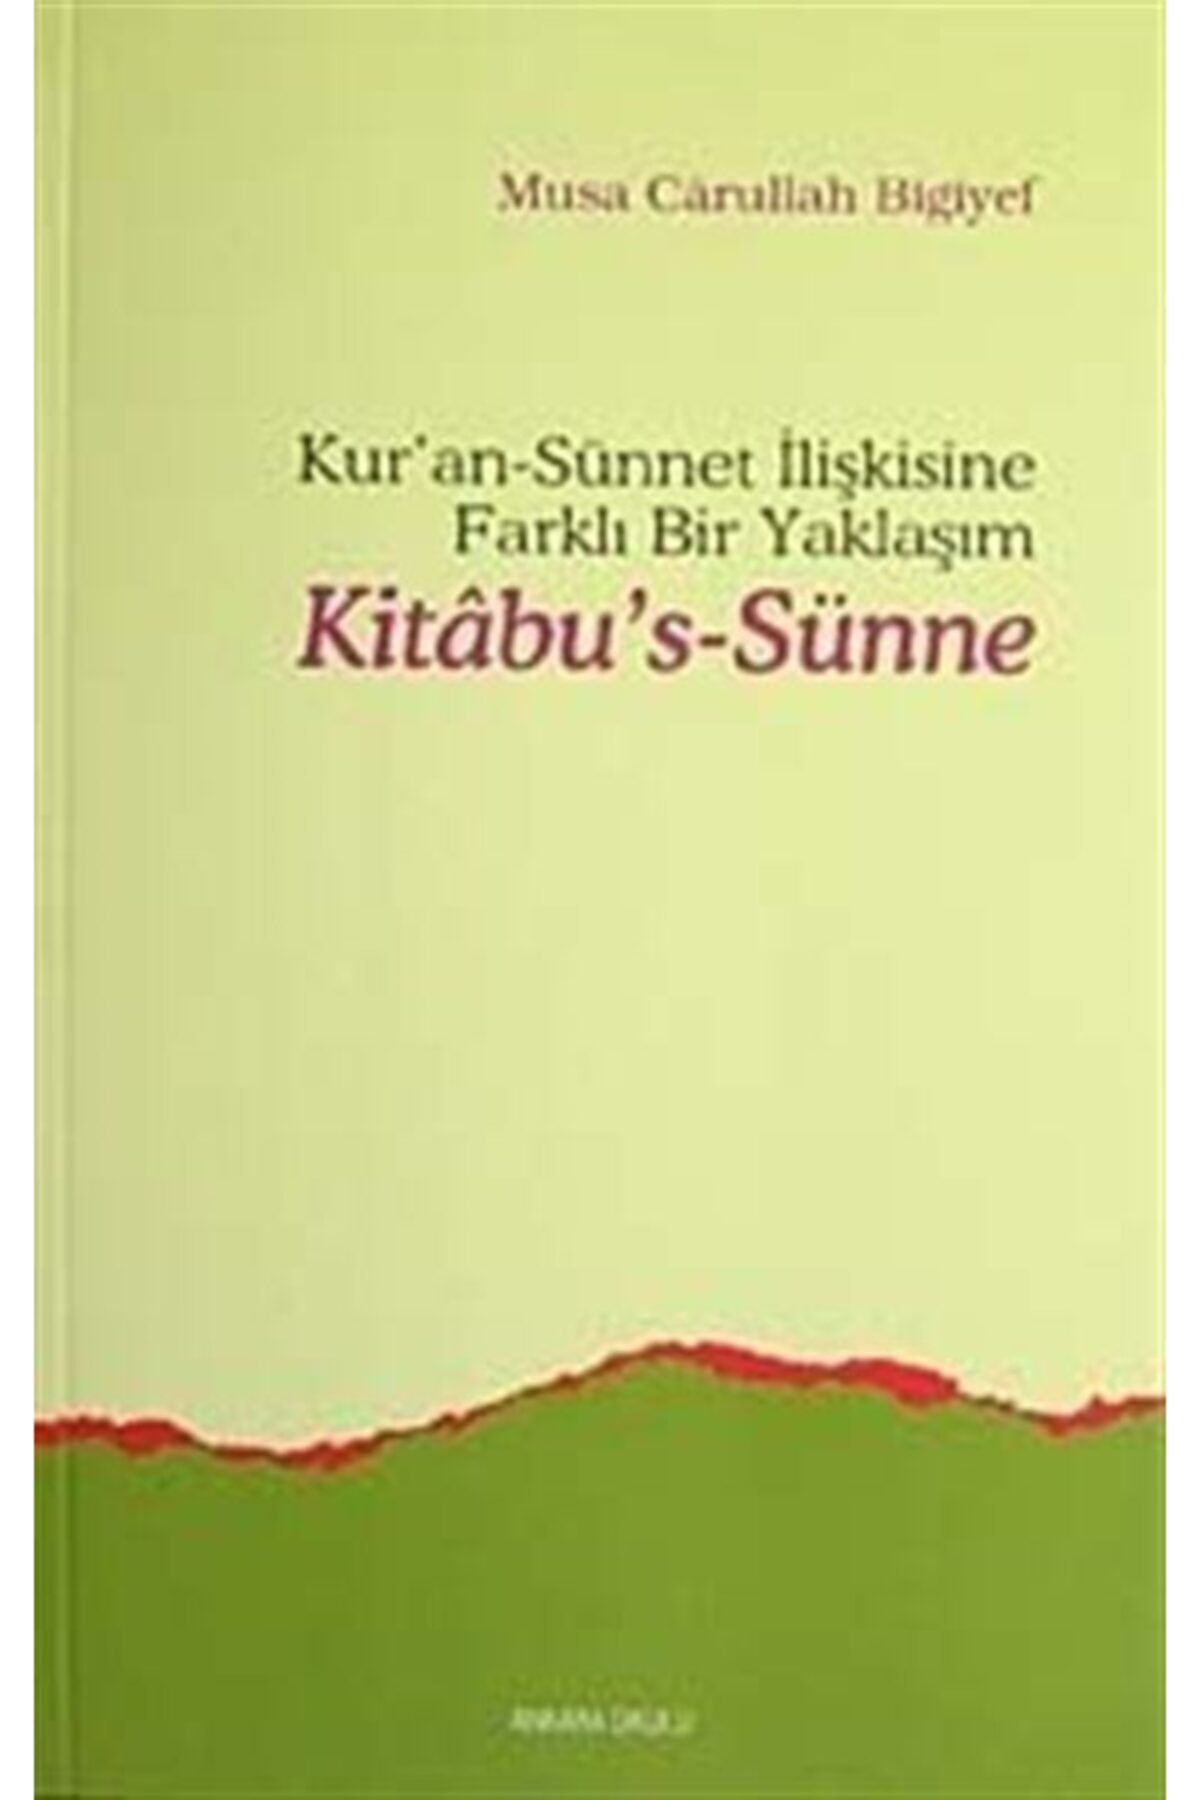 Ankara Okulu Yayınları Kitab-us Sünne & Kur'an Sünnet Ilişkisine Farklı Bir Yaklaşım